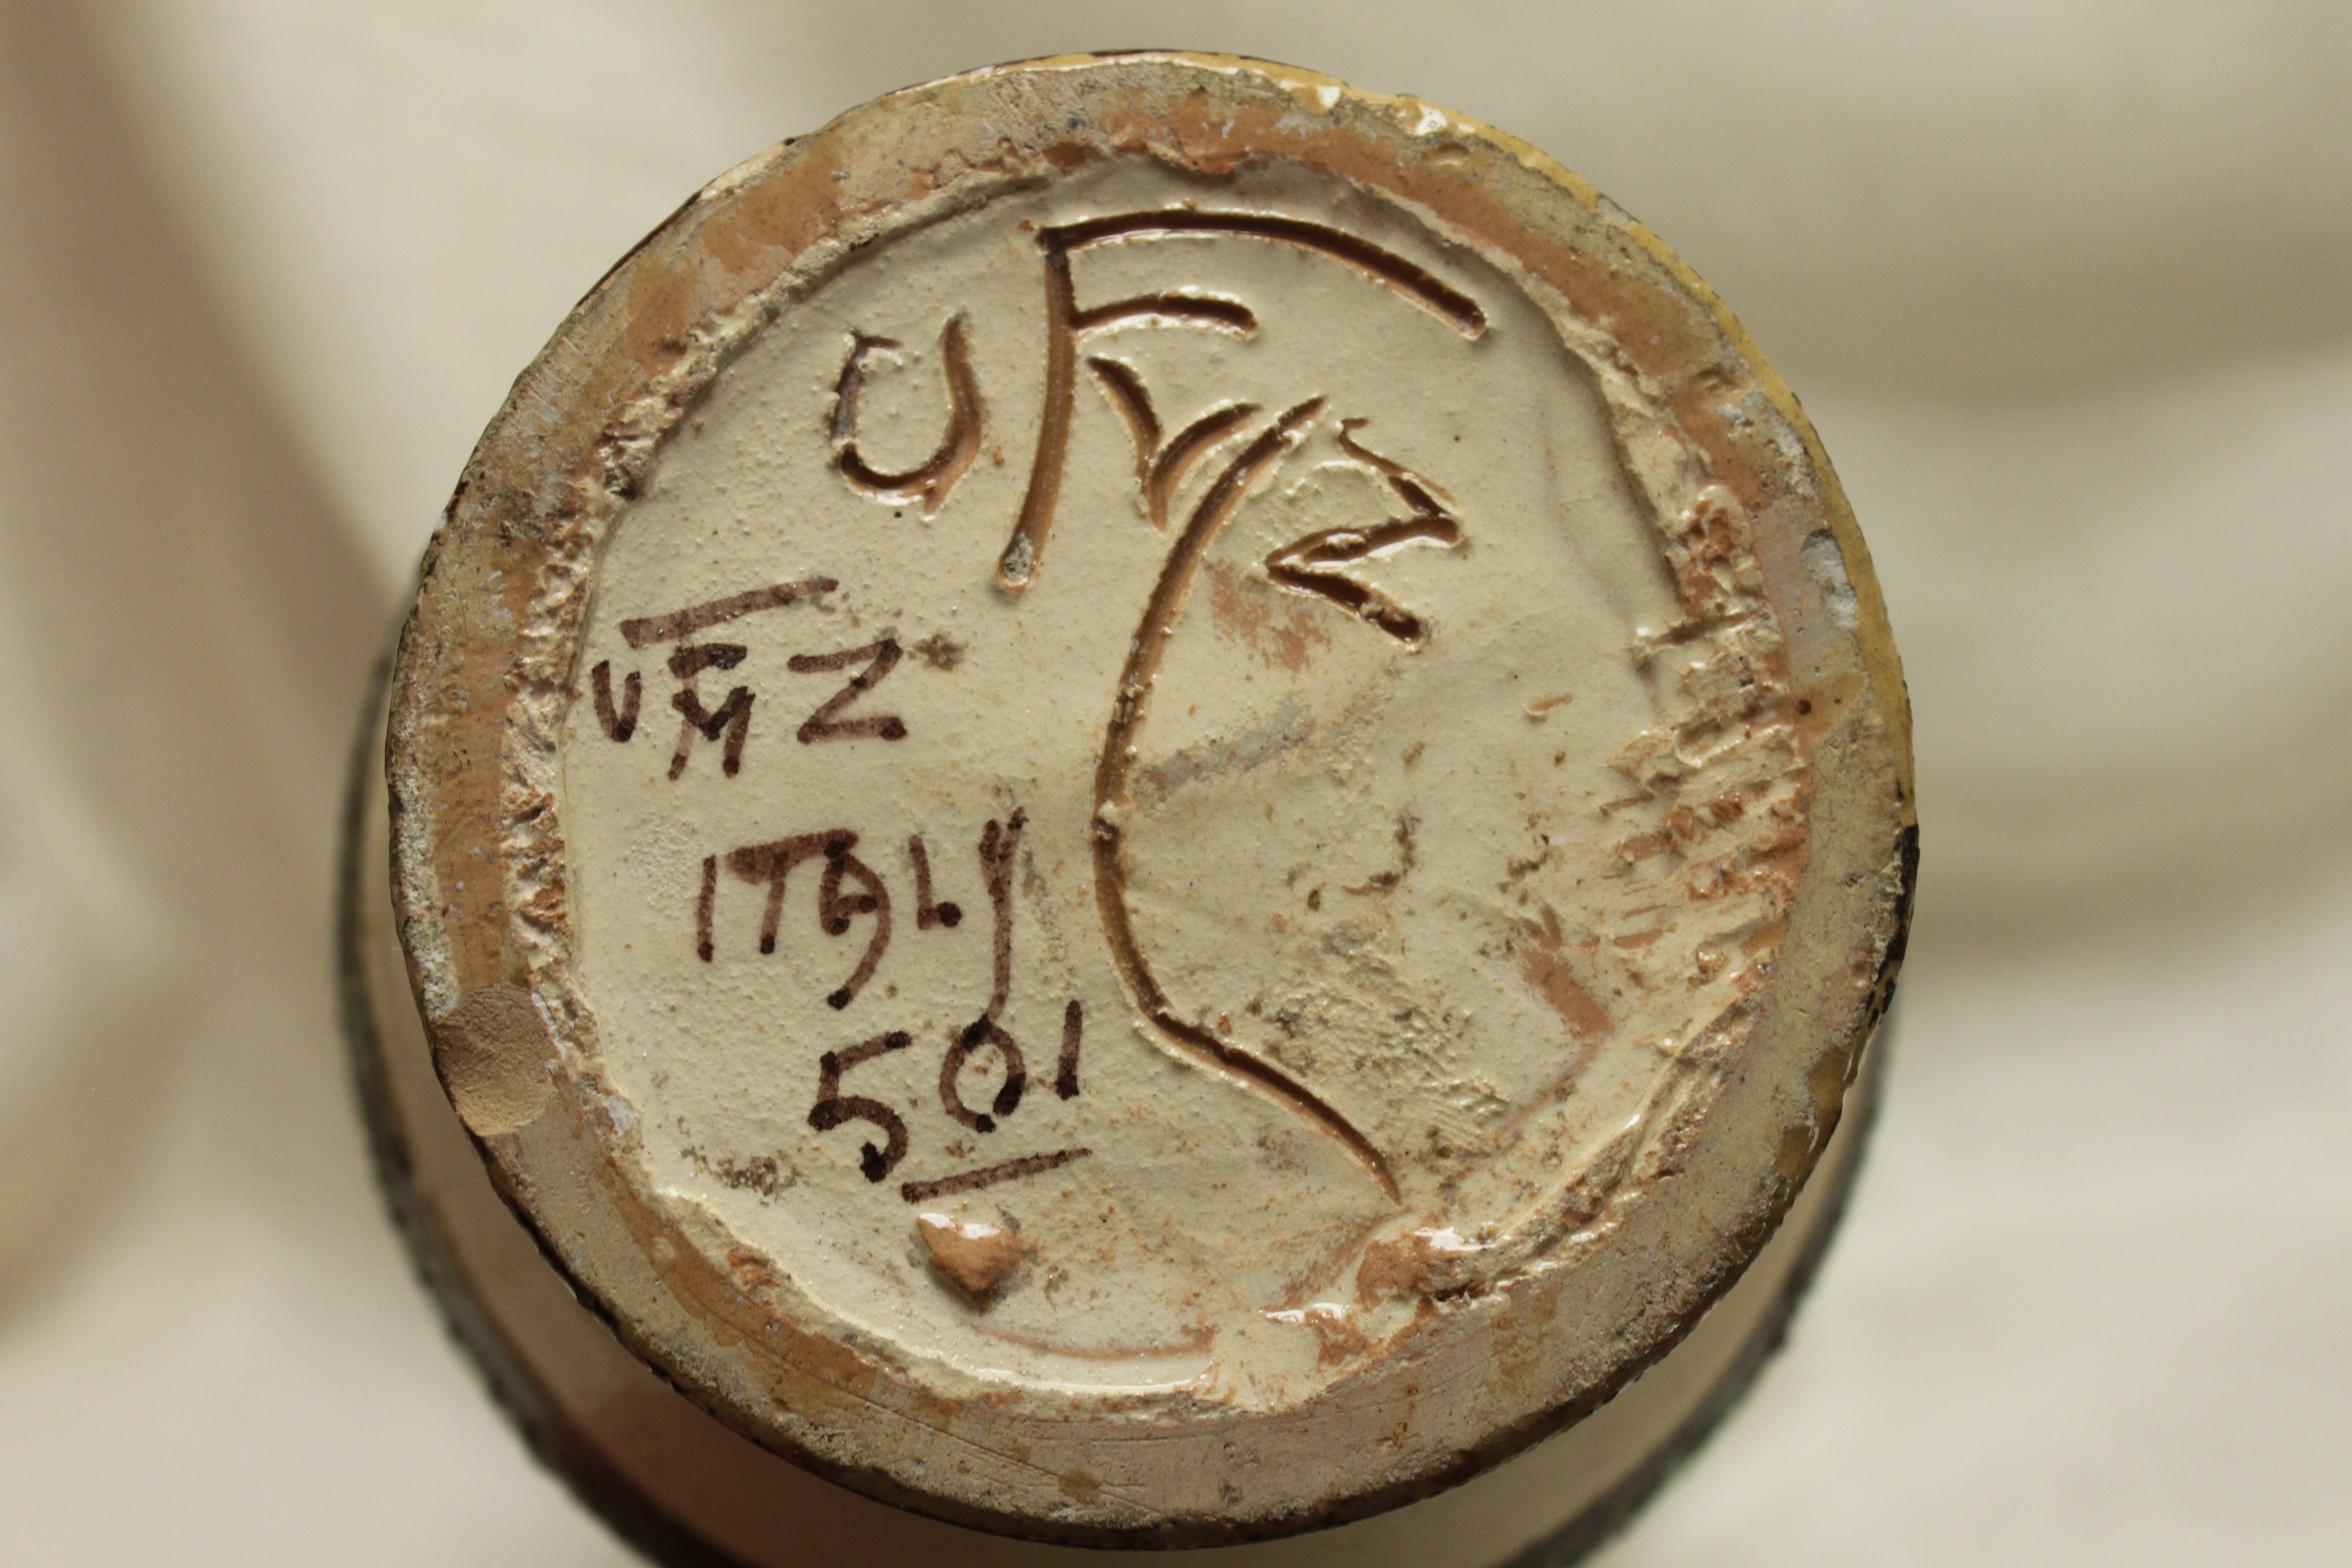 Cette cruche en poterie fabriquée à la main par Ugo Zaccagnini de Florence mesure 214 mm (8,5 pouces) de haut et a un diamètre de 122 mm (4,75 pouces). Tous les aspects de la décoration présentent un motif incisé qui a ensuite été coloré. C'est ce